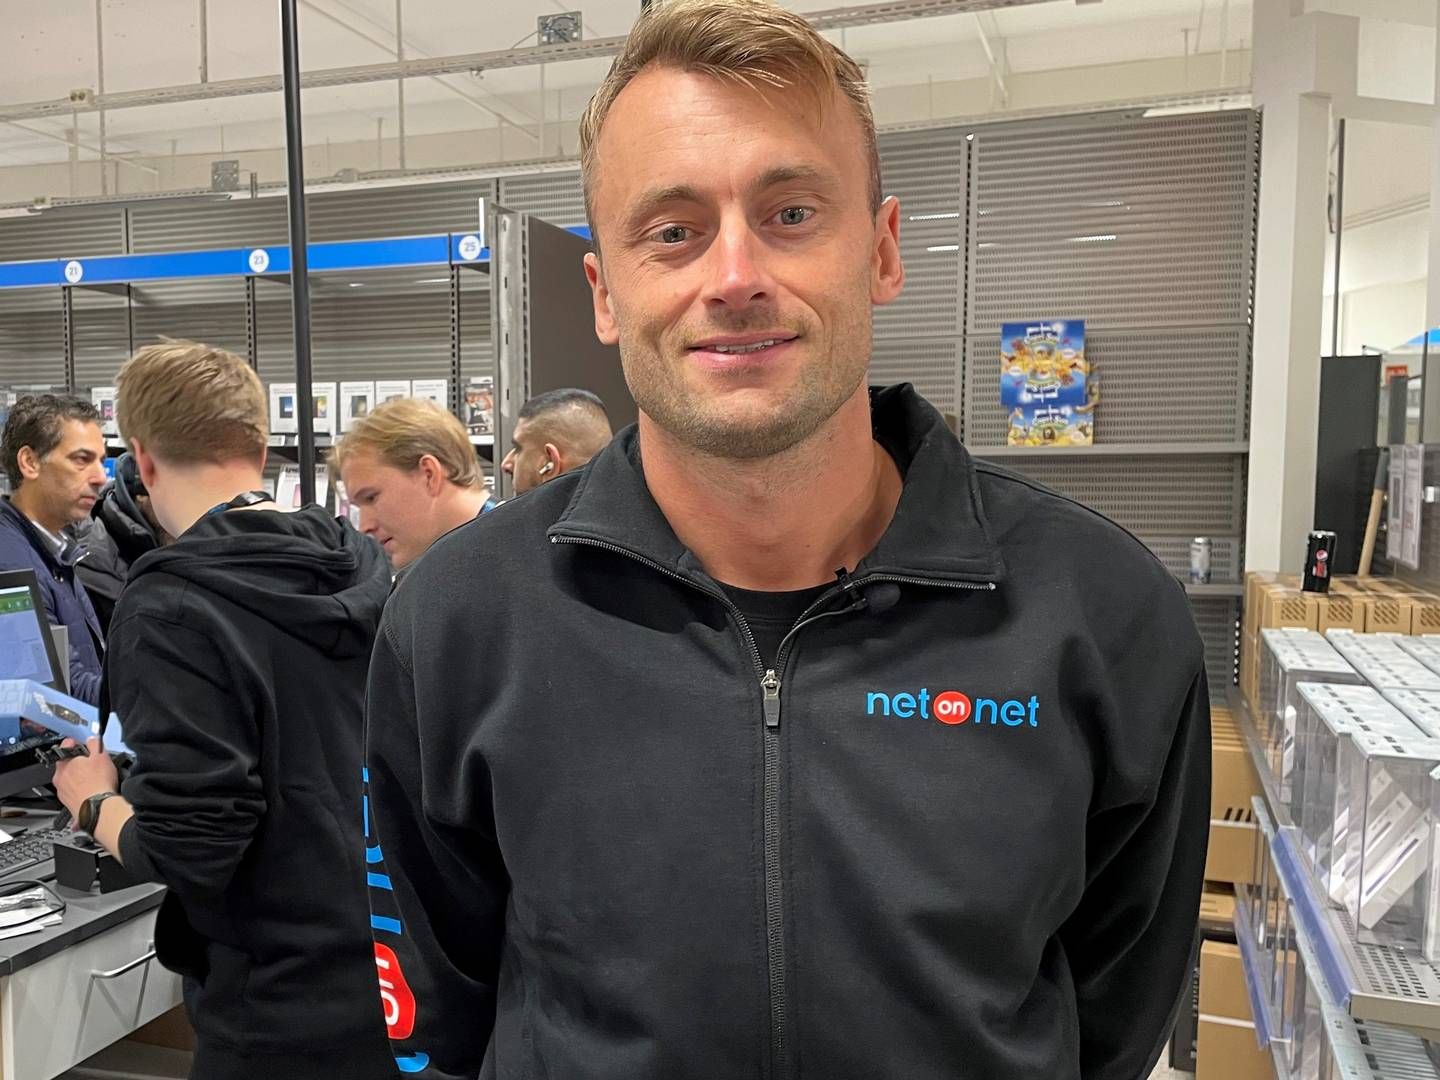 TREÅRSKONTRAKT: NetOnNet har inngått en treårskontrakt sammen med Petter Northug. | Foto: Fredrik Andersson/HandelsWatch